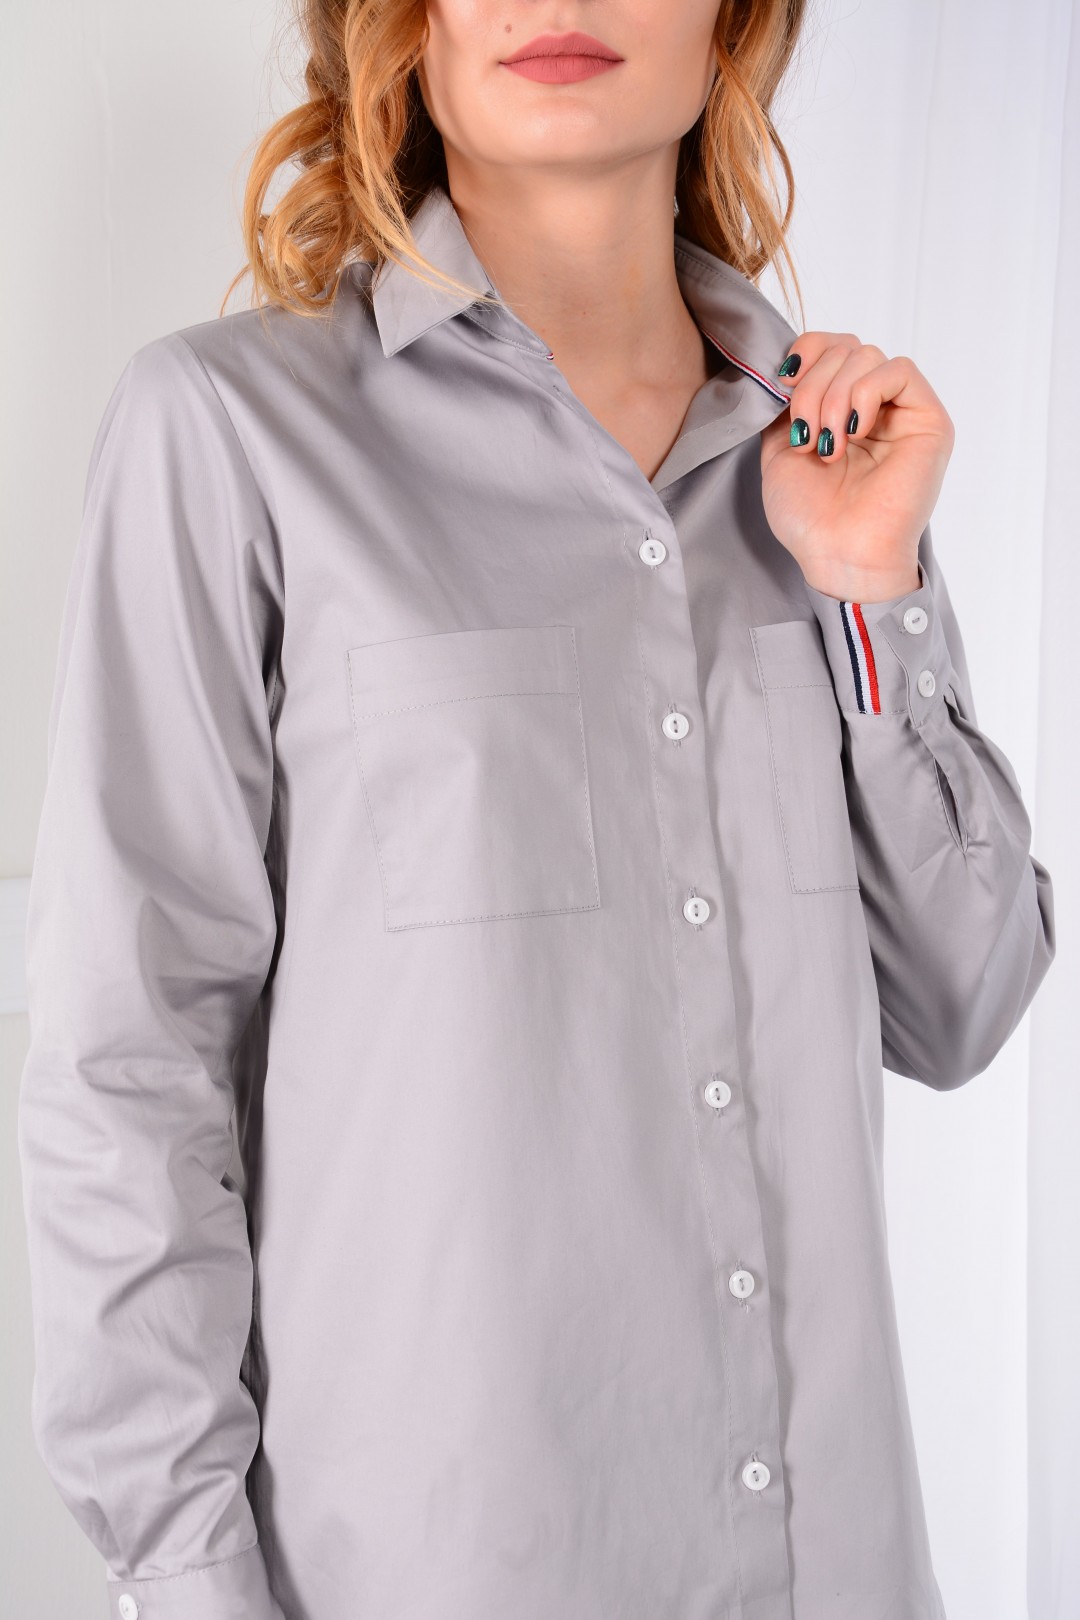 Рубашка Лаборатория Моды G233 серый